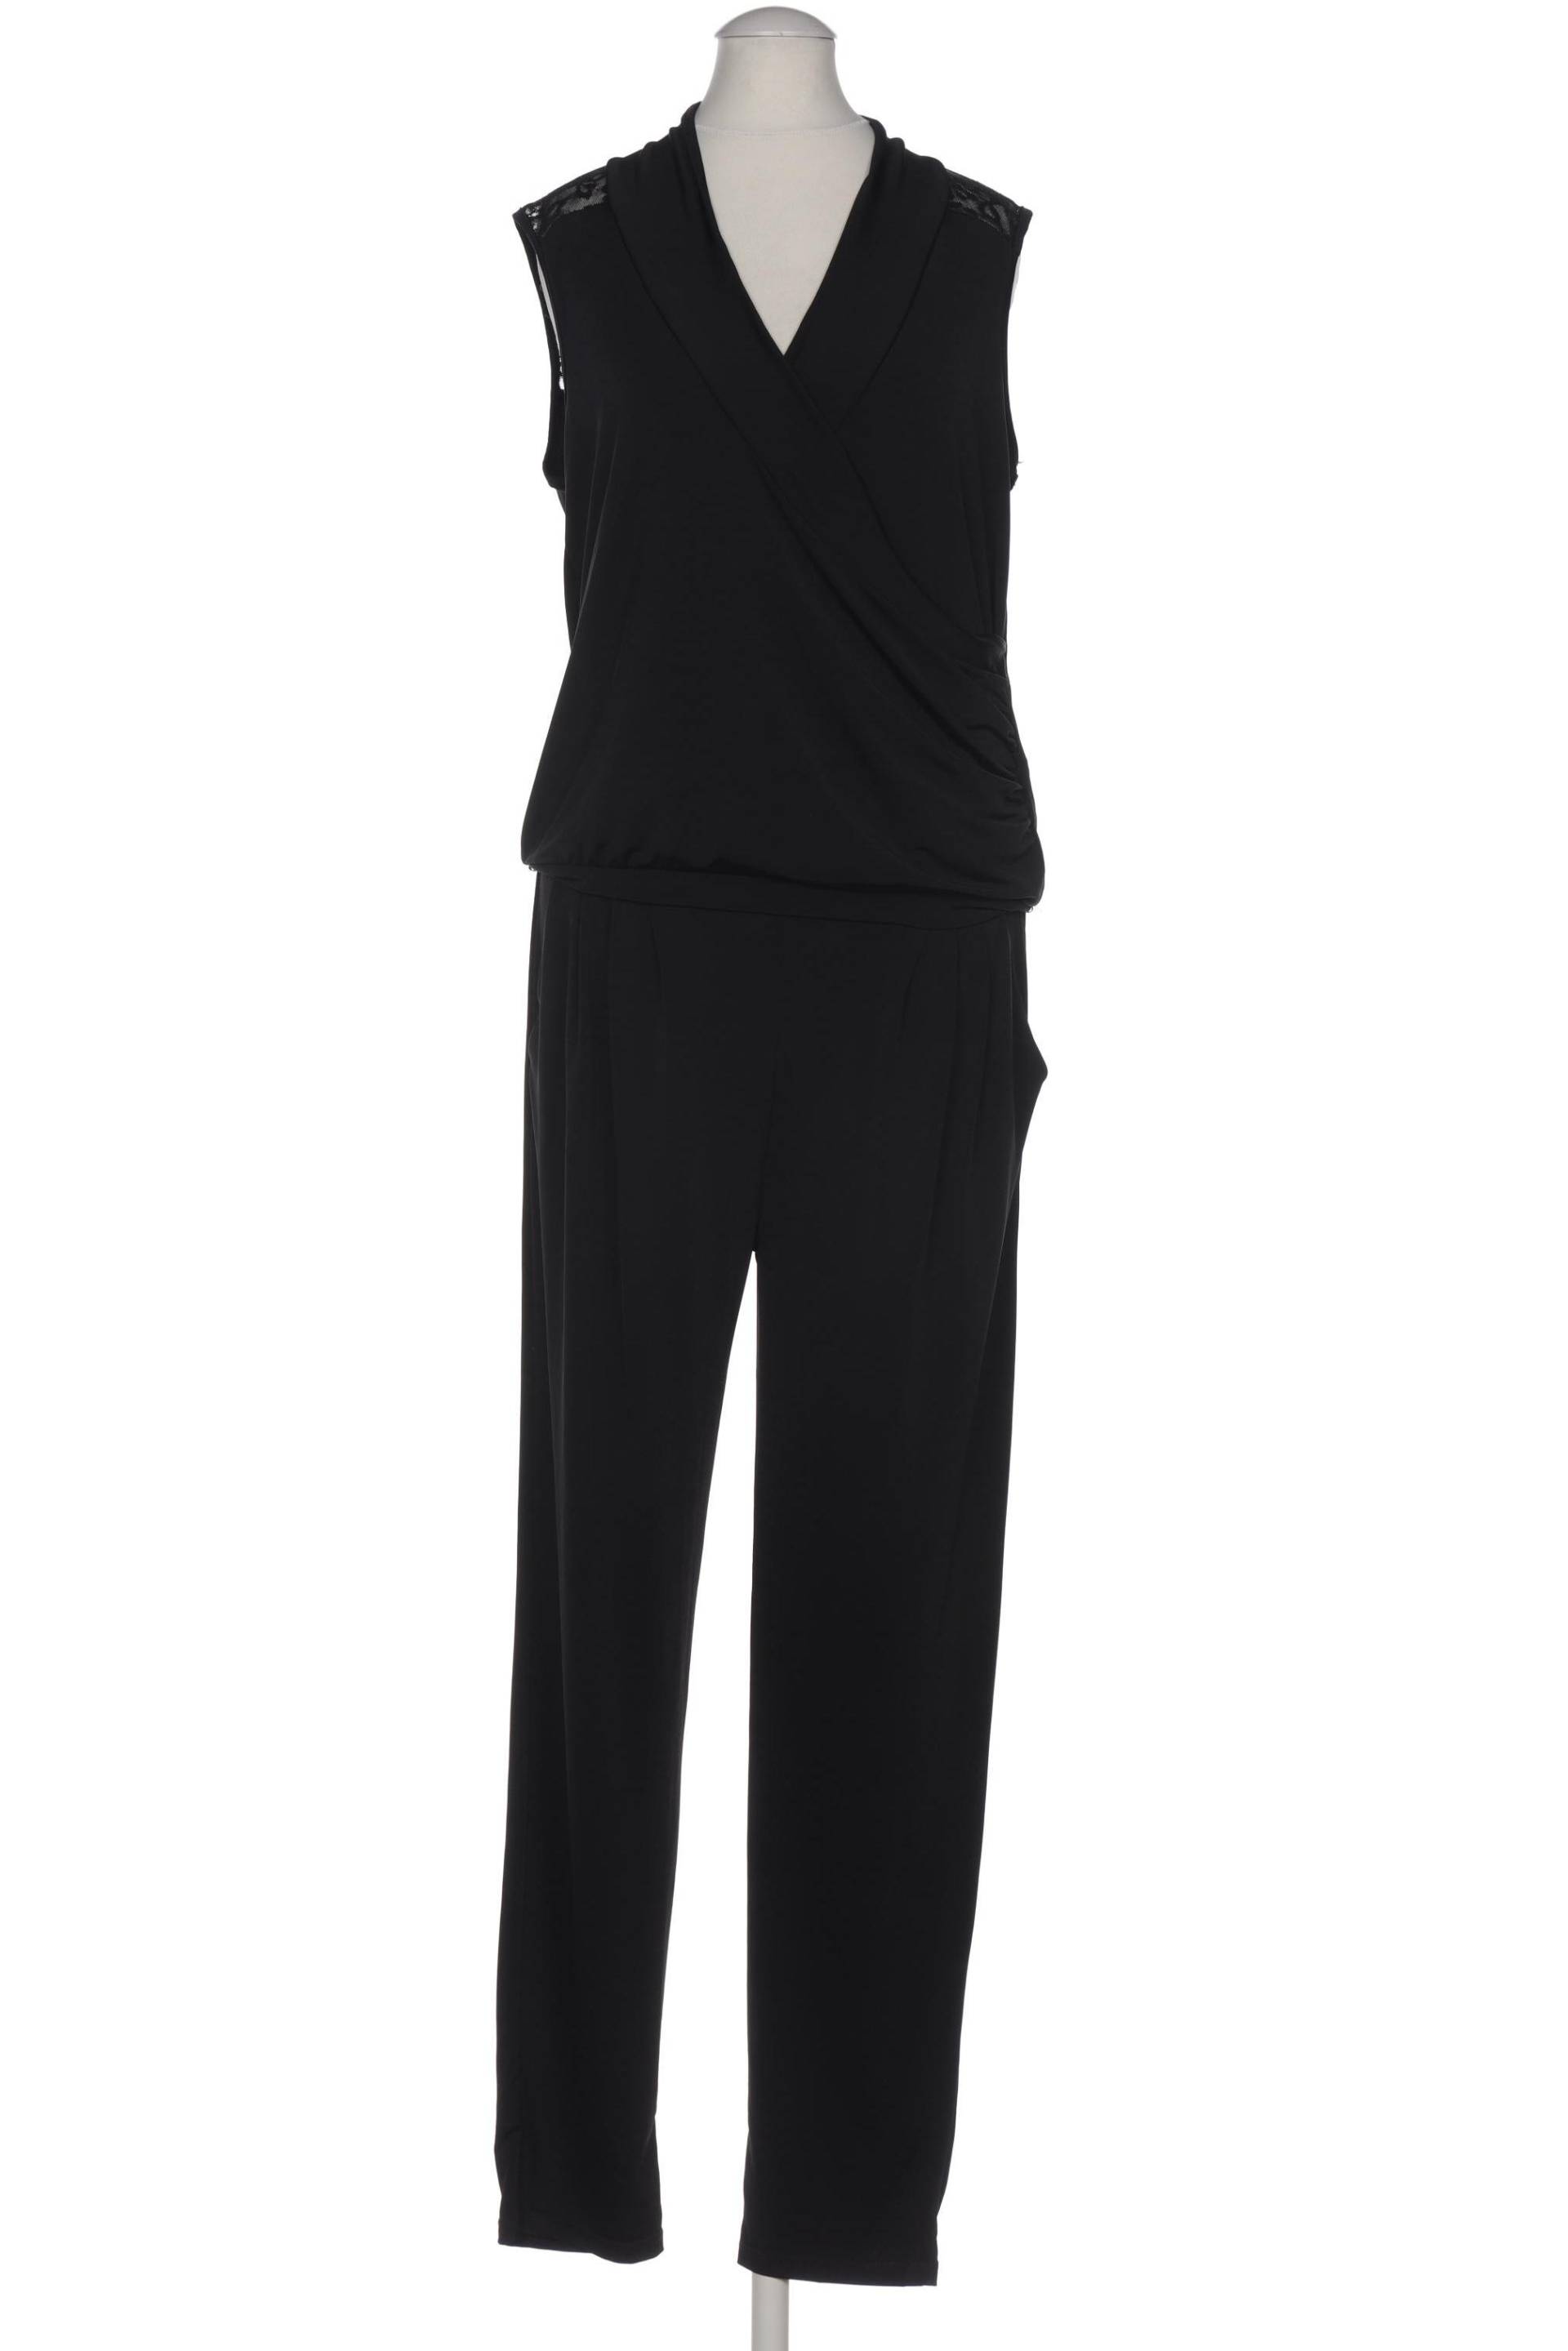 Morgan Damen Jumpsuit/Overall, schwarz, Gr. 36 von Morgan